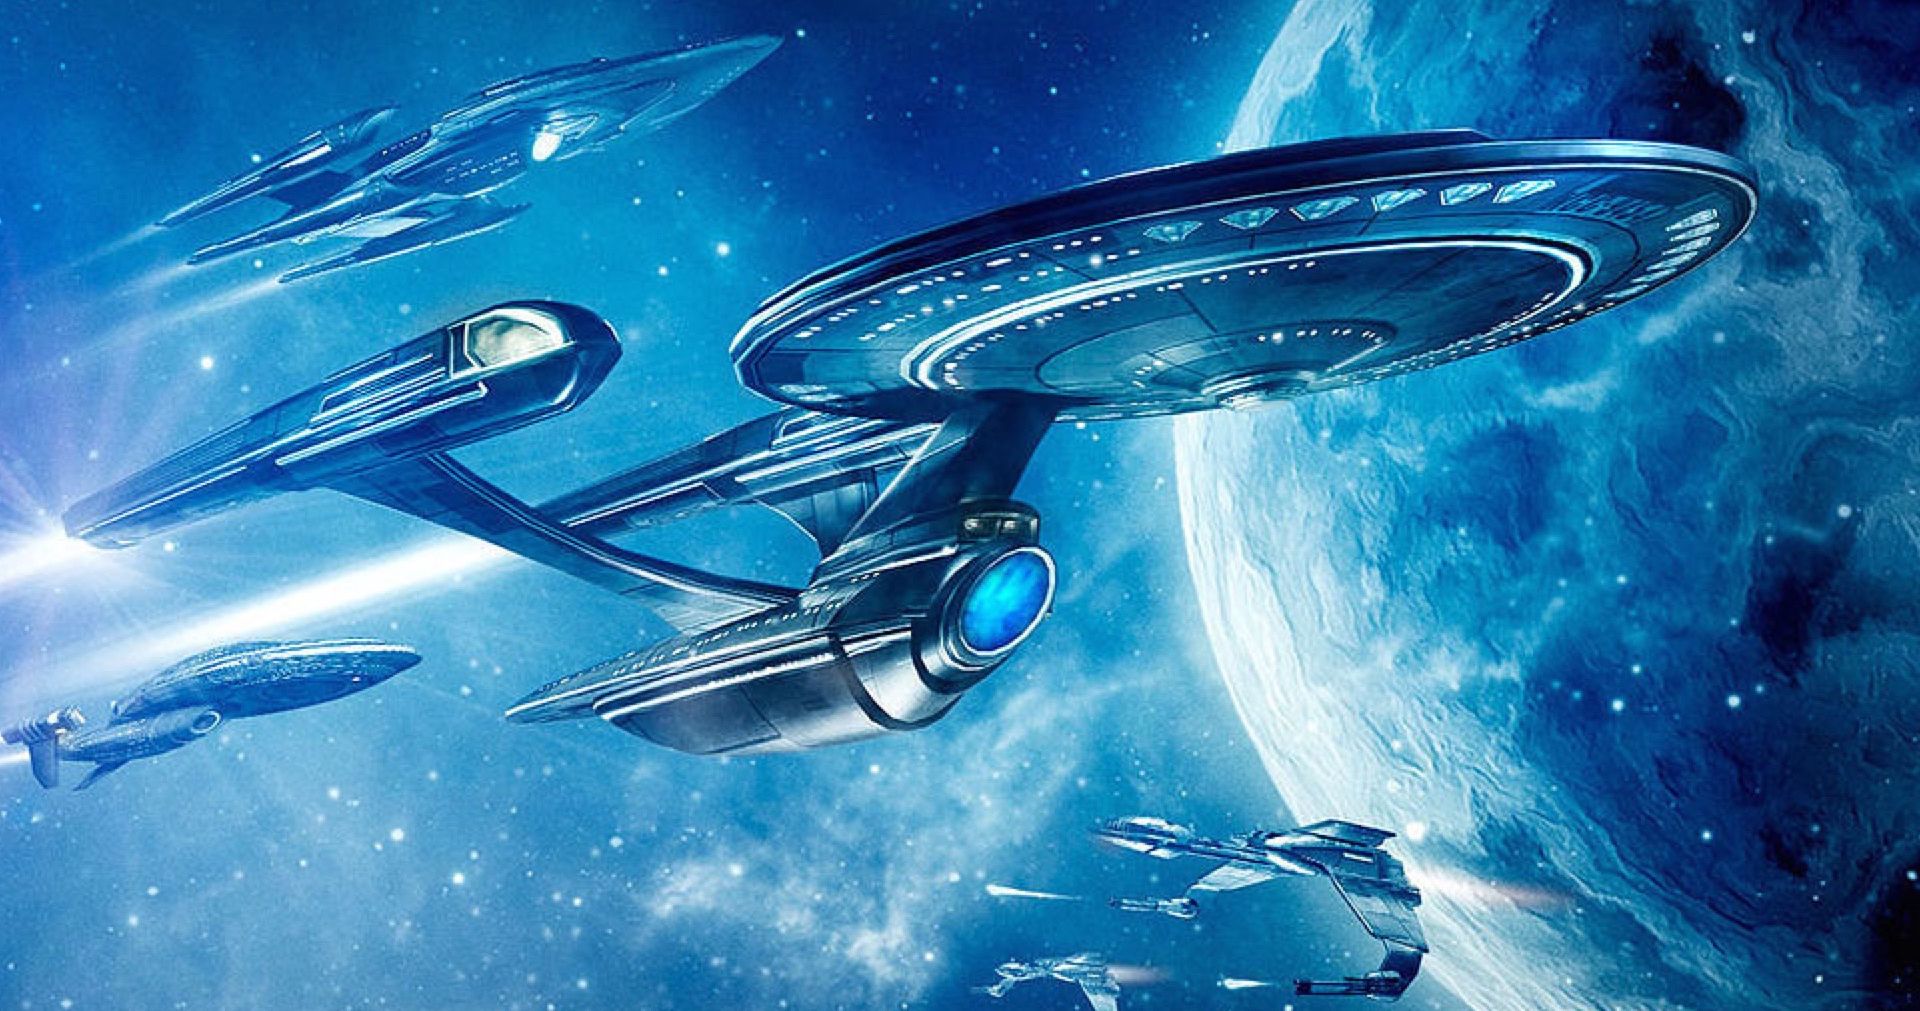 Star Trek 4 Is Not in Director Noah Hawley's Immediate Future